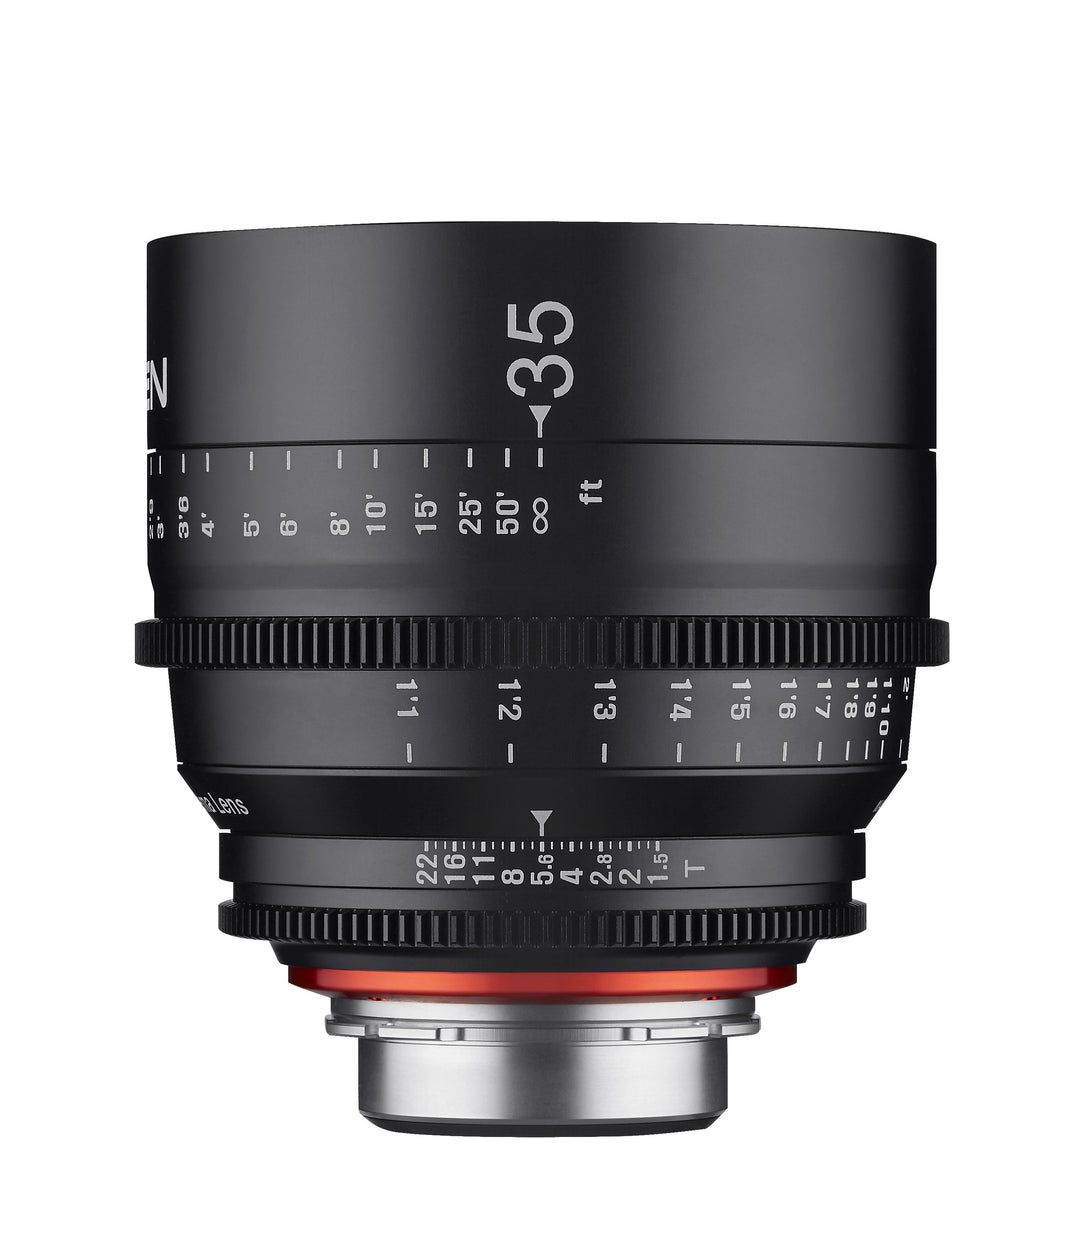 16, 35, 50, 85mm XEEN Pro Cinema Lens Bundle